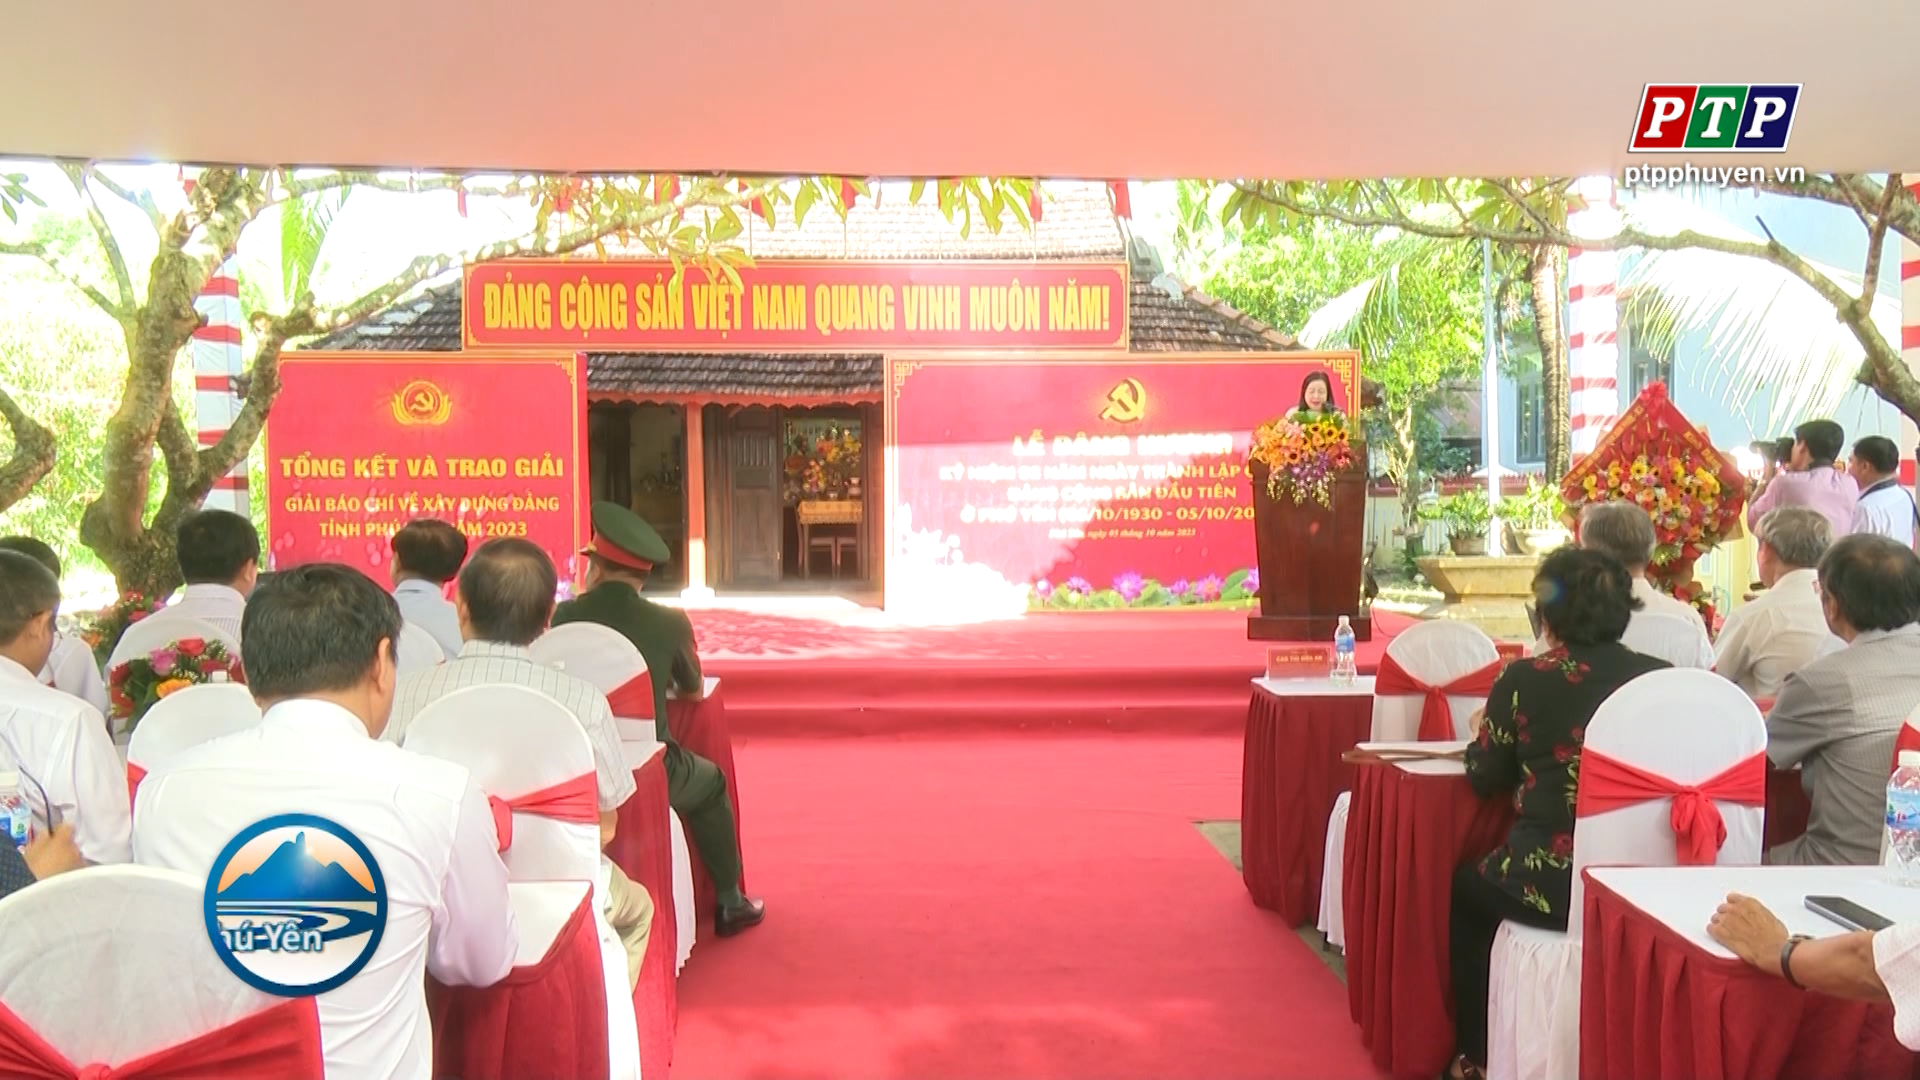 Kỷ niệm 93 năm ngày thành lập Chi bộ Đảng Cộng sản Việt Nam đầu tiên tại Phú Yên và trao giải báo chí về Xây dựng Đảng năm 2023